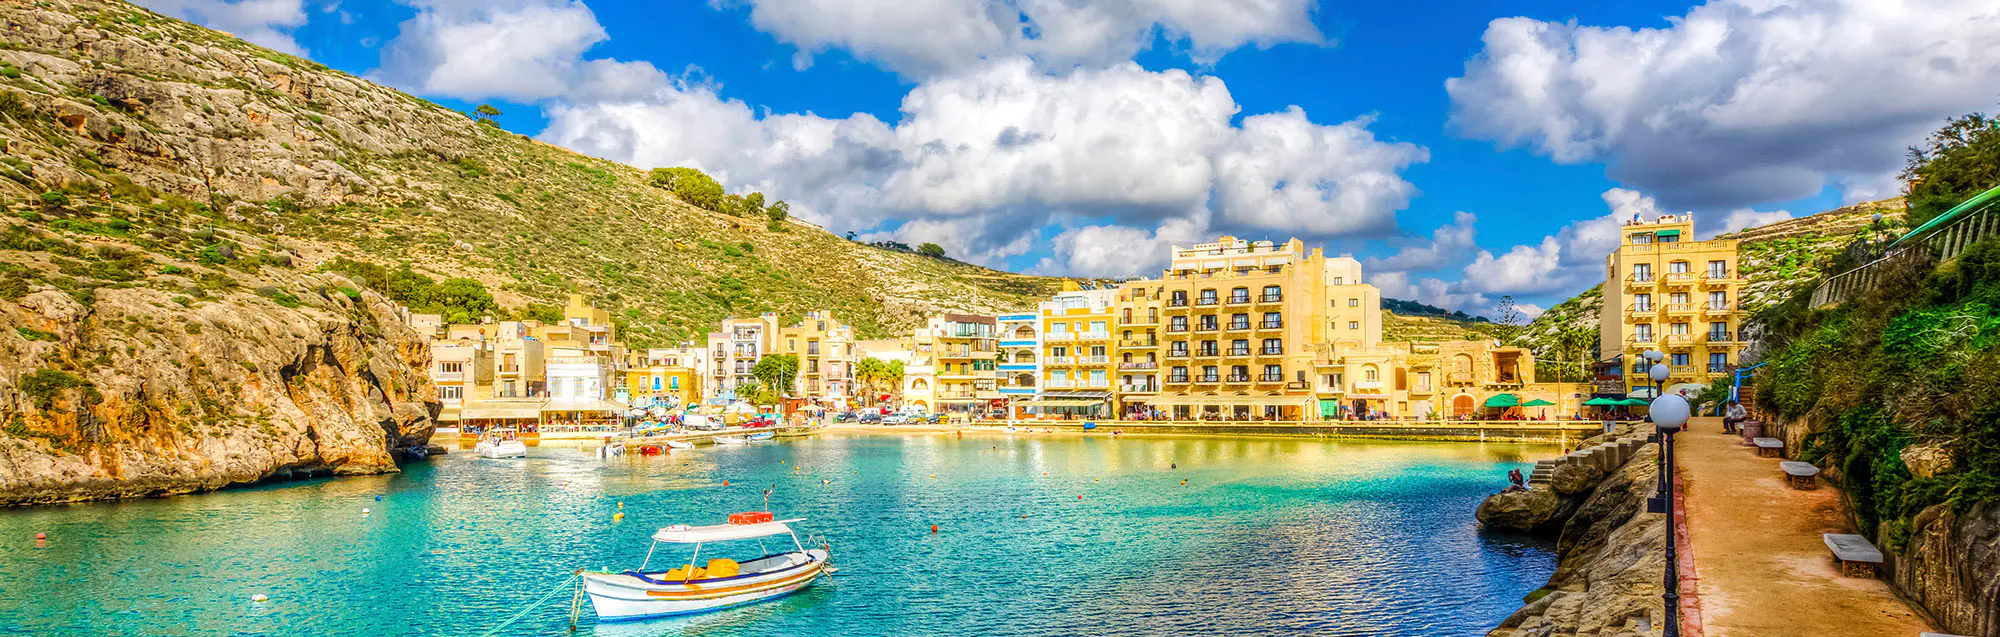 Liste der Sprachschulen in Insel Gozo für Erwachsene und Jugendliche